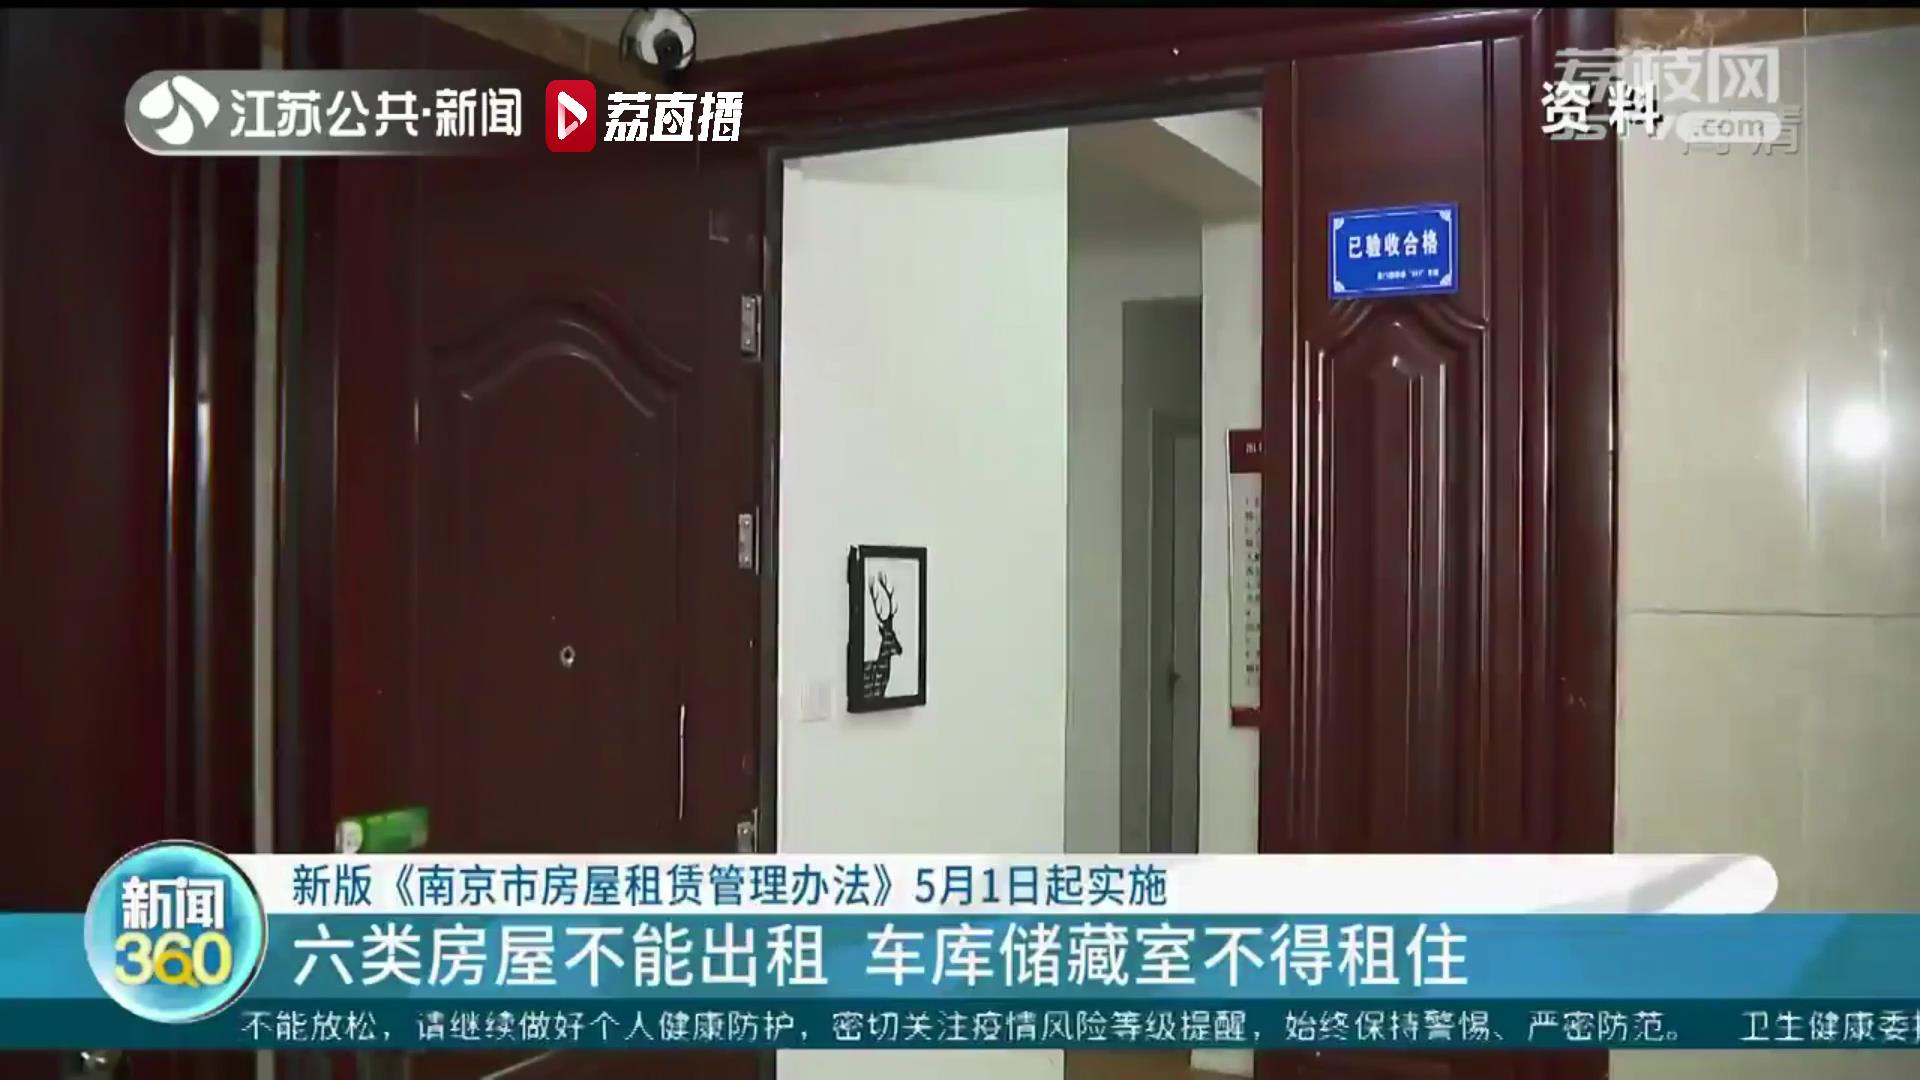 新版《南京市房屋租赁管理办法》将实施 提交虚假住房租赁备案材料最高罚三万